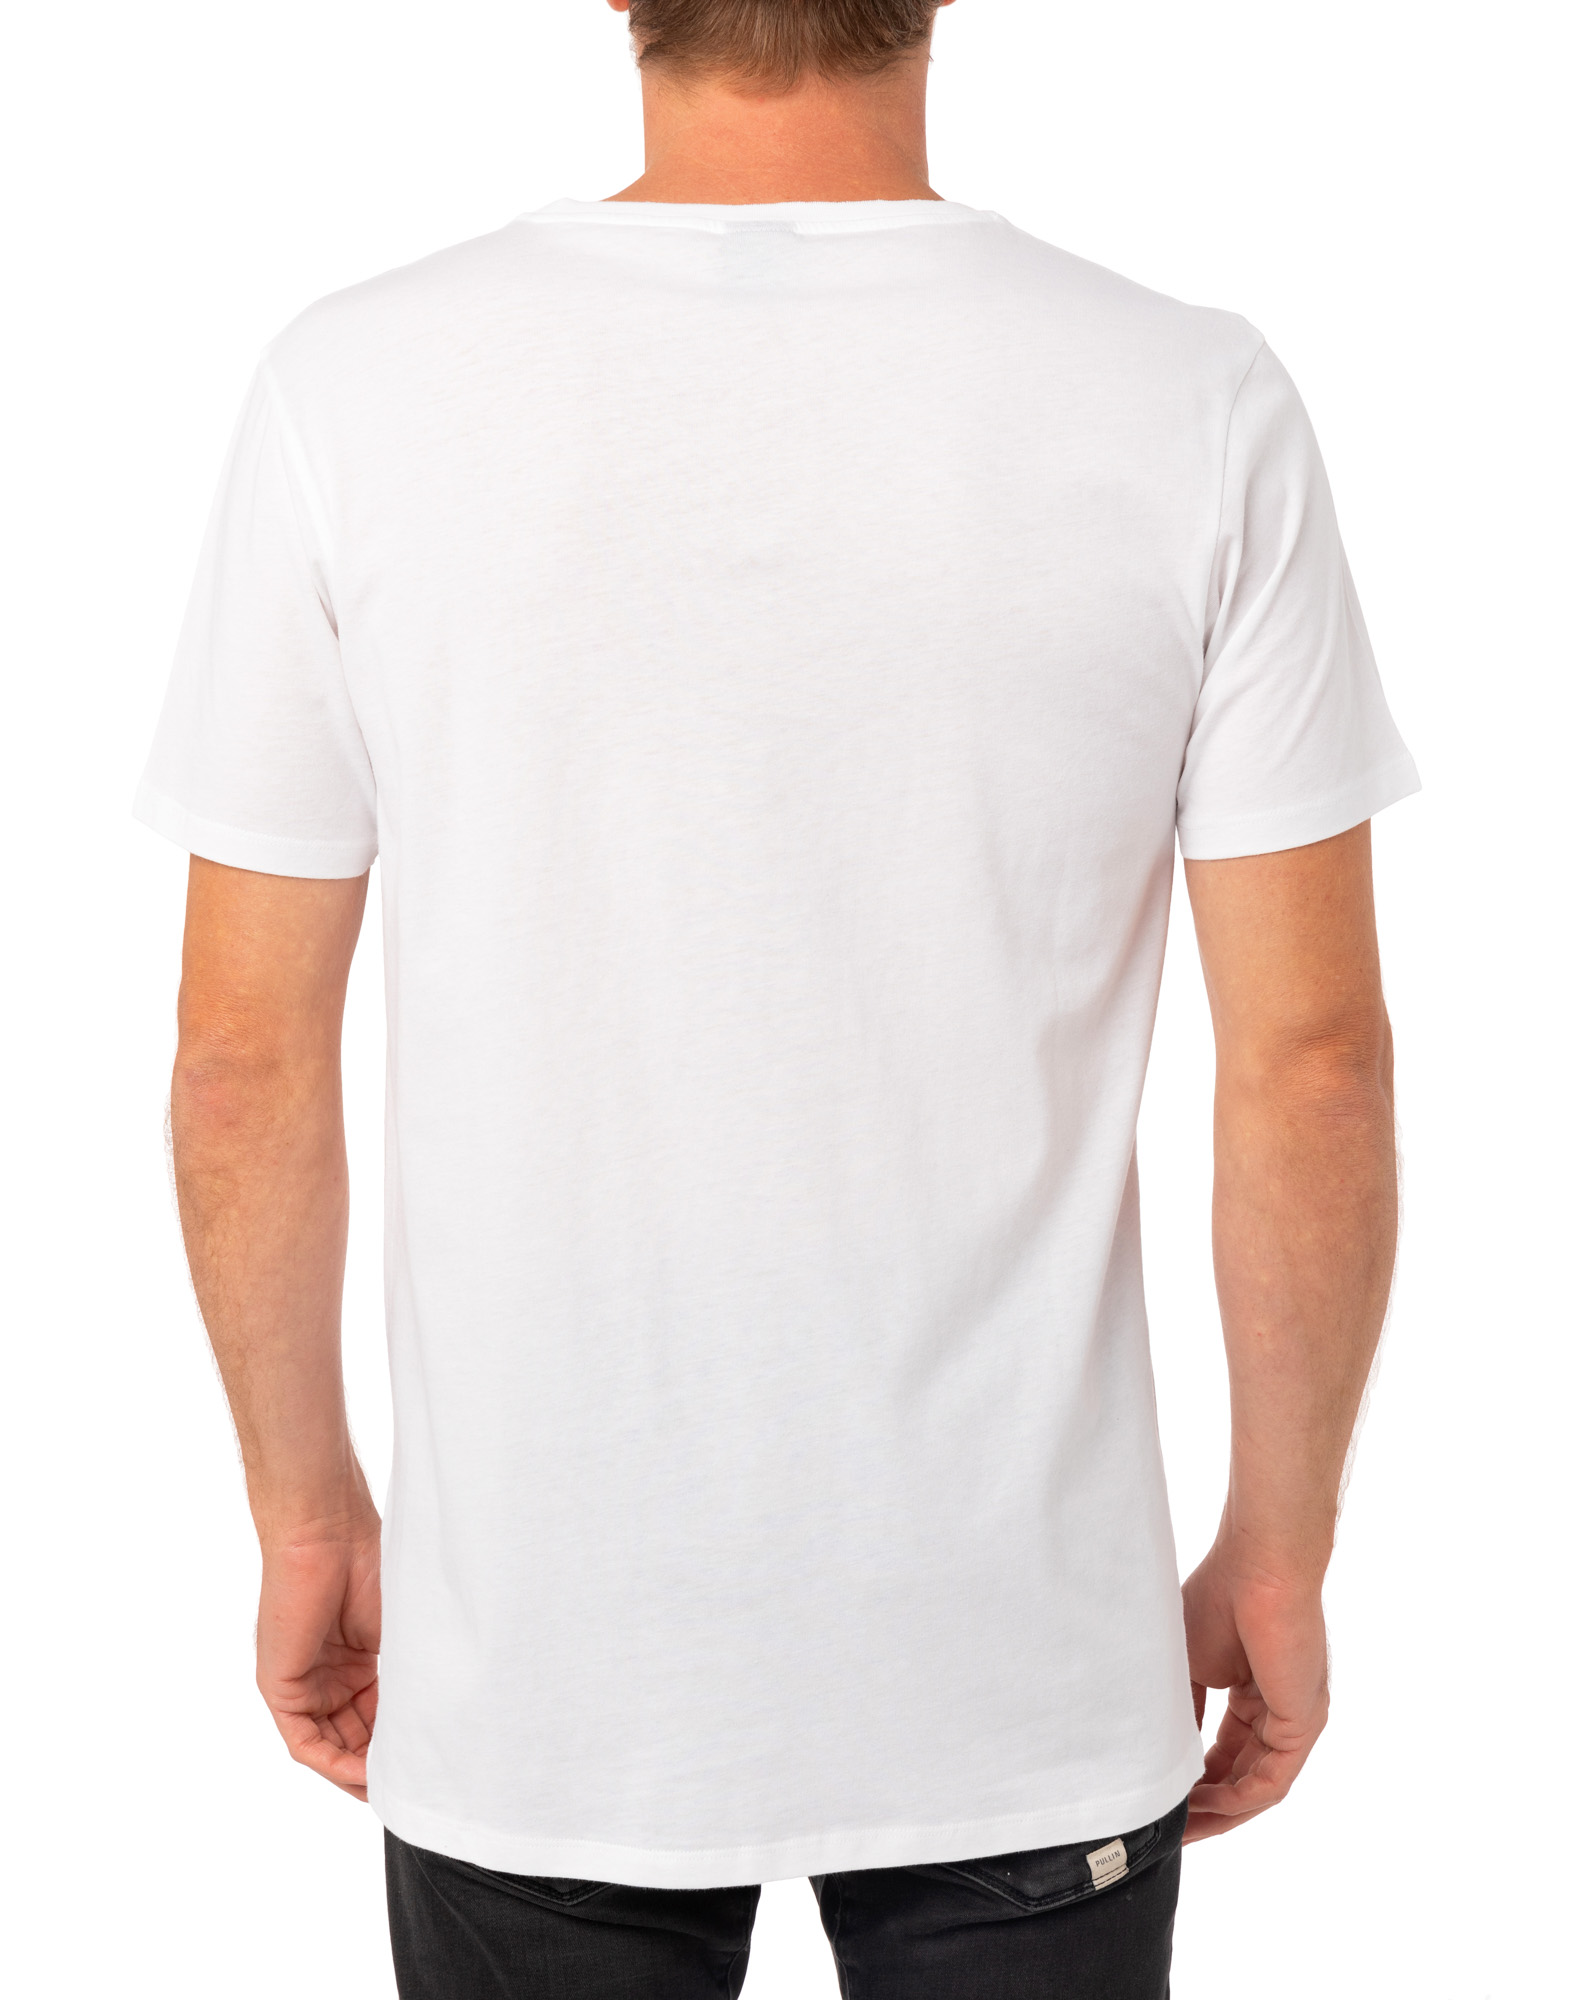 Men's t-shirt SAVETHEPLANET